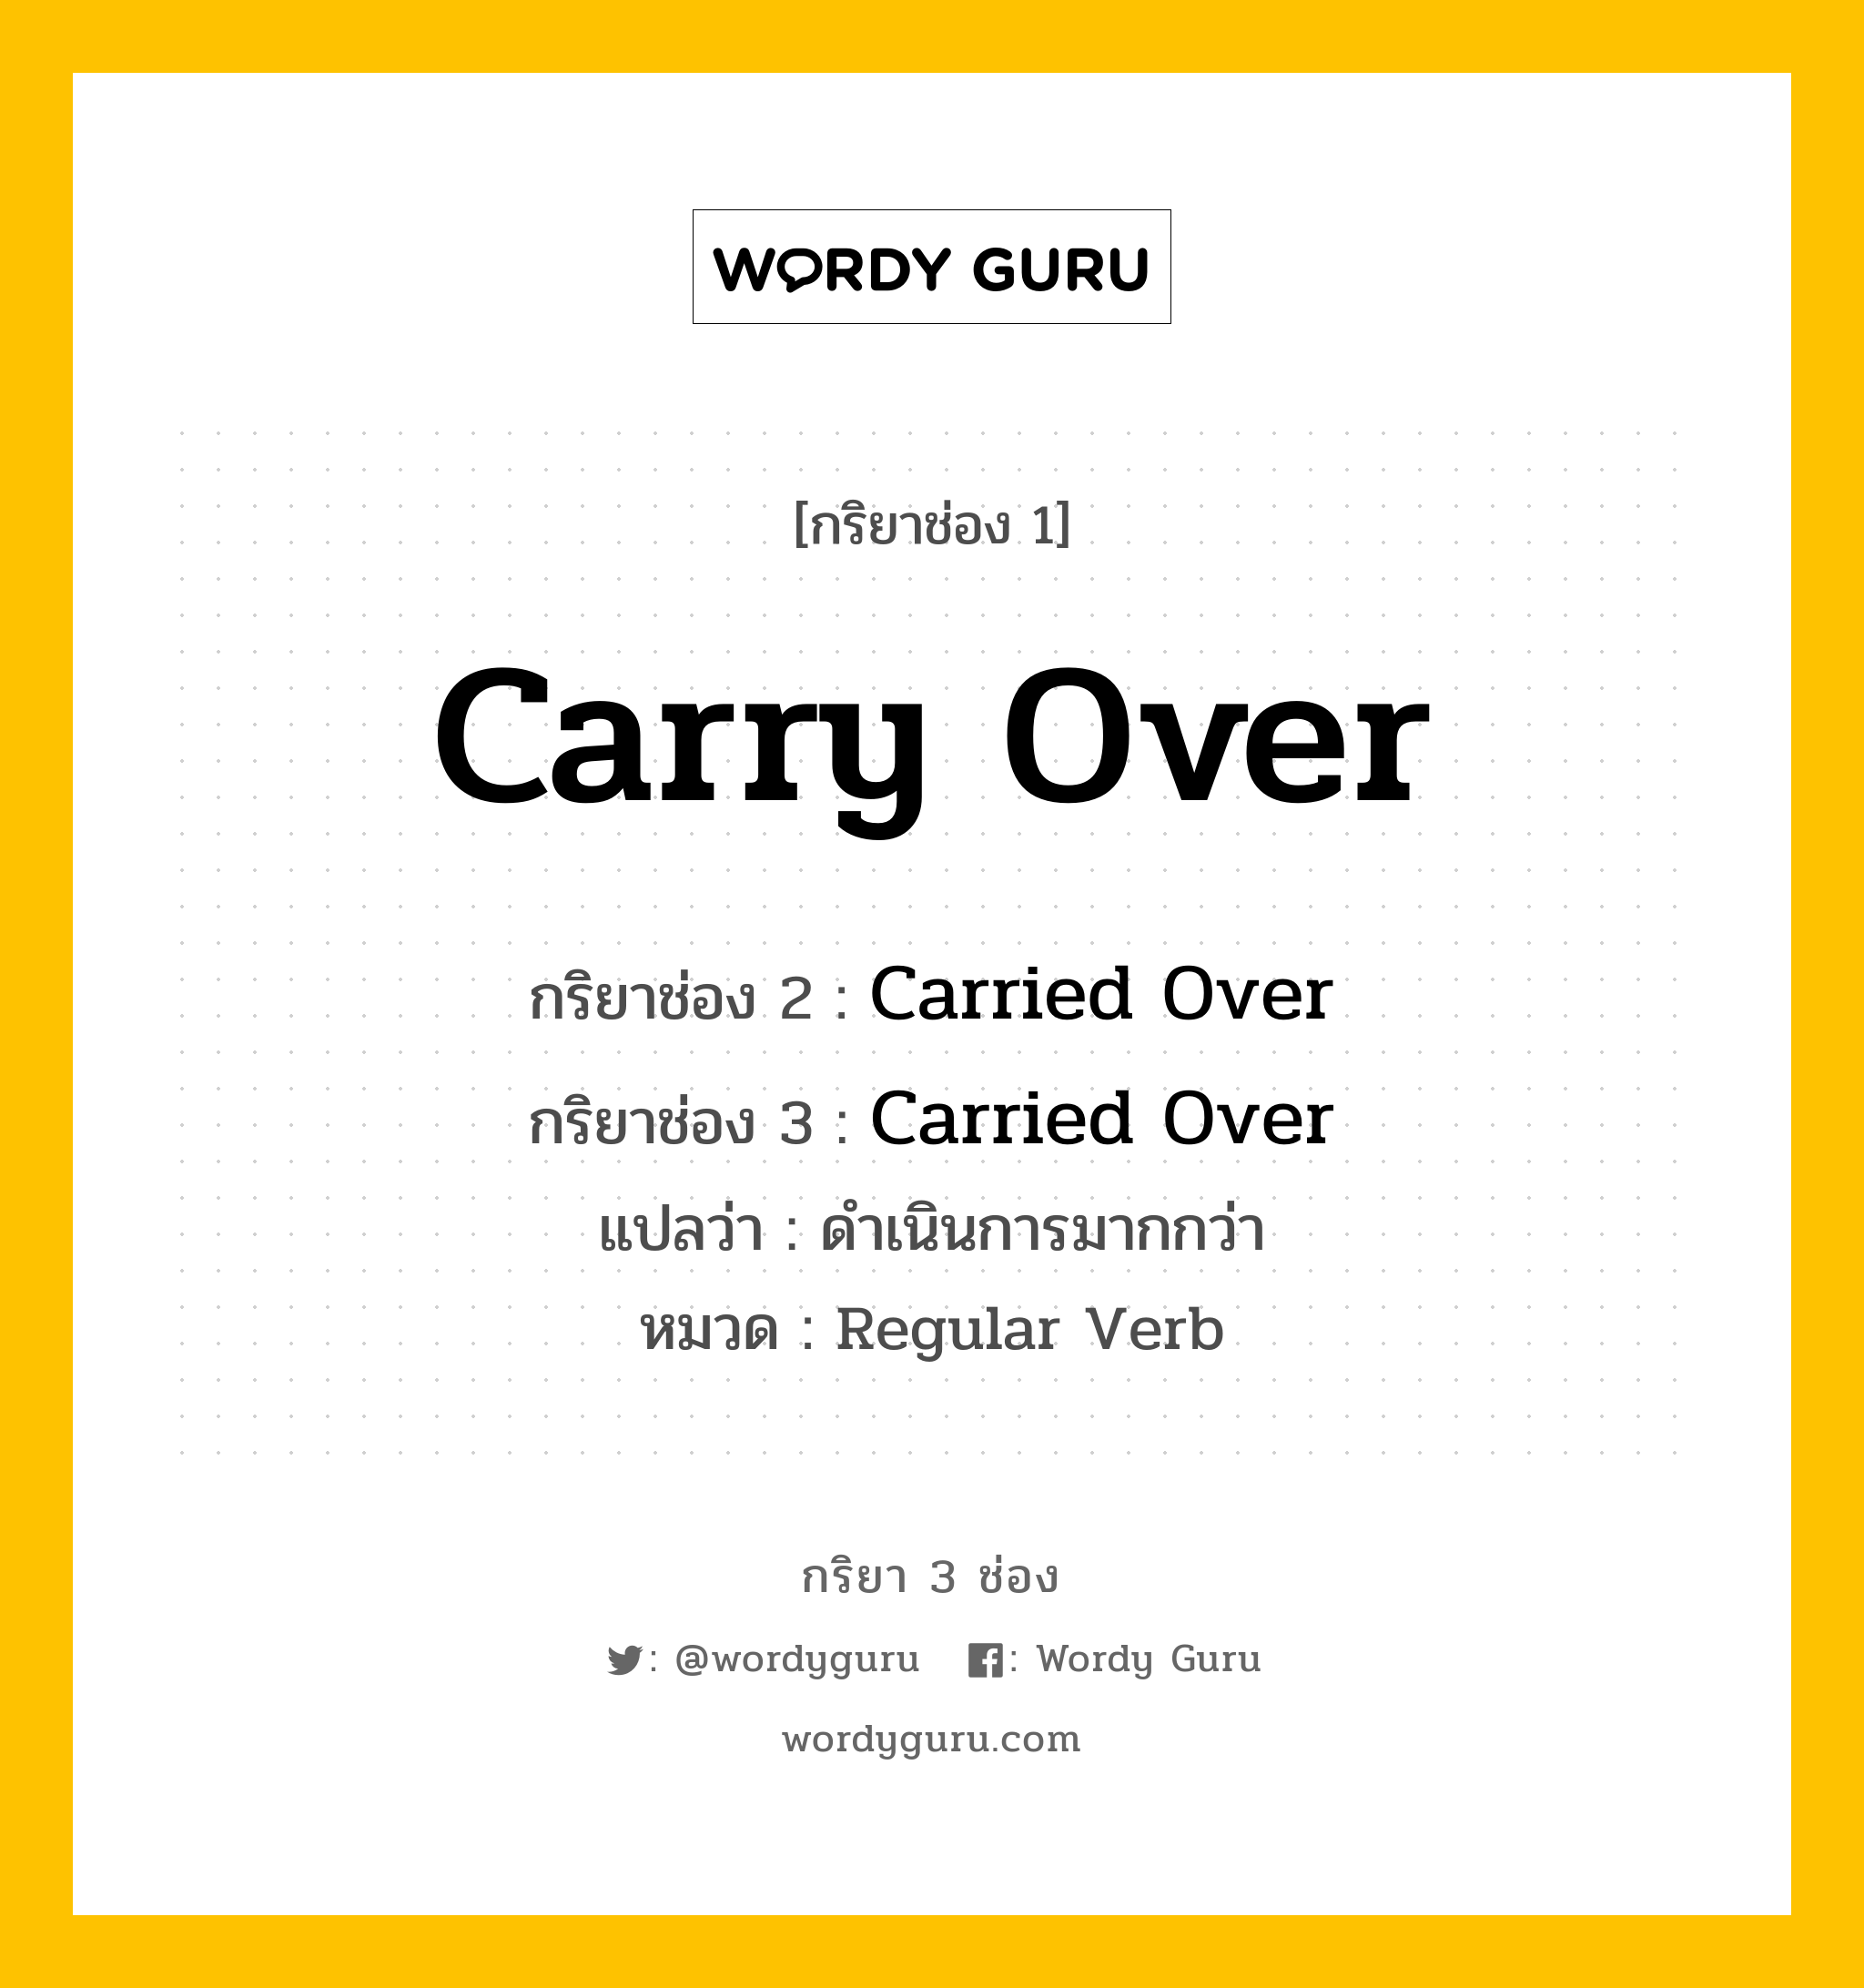 กริยา 3 ช่อง ของ Carry Over คืออะไร? มาดูคำอ่าน คำแปลกันเลย, กริยาช่อง 1 Carry Over กริยาช่อง 2 Carried Over กริยาช่อง 3 Carried Over แปลว่า ดำเนินการมากกว่า หมวด Regular Verb หมวด Regular Verb